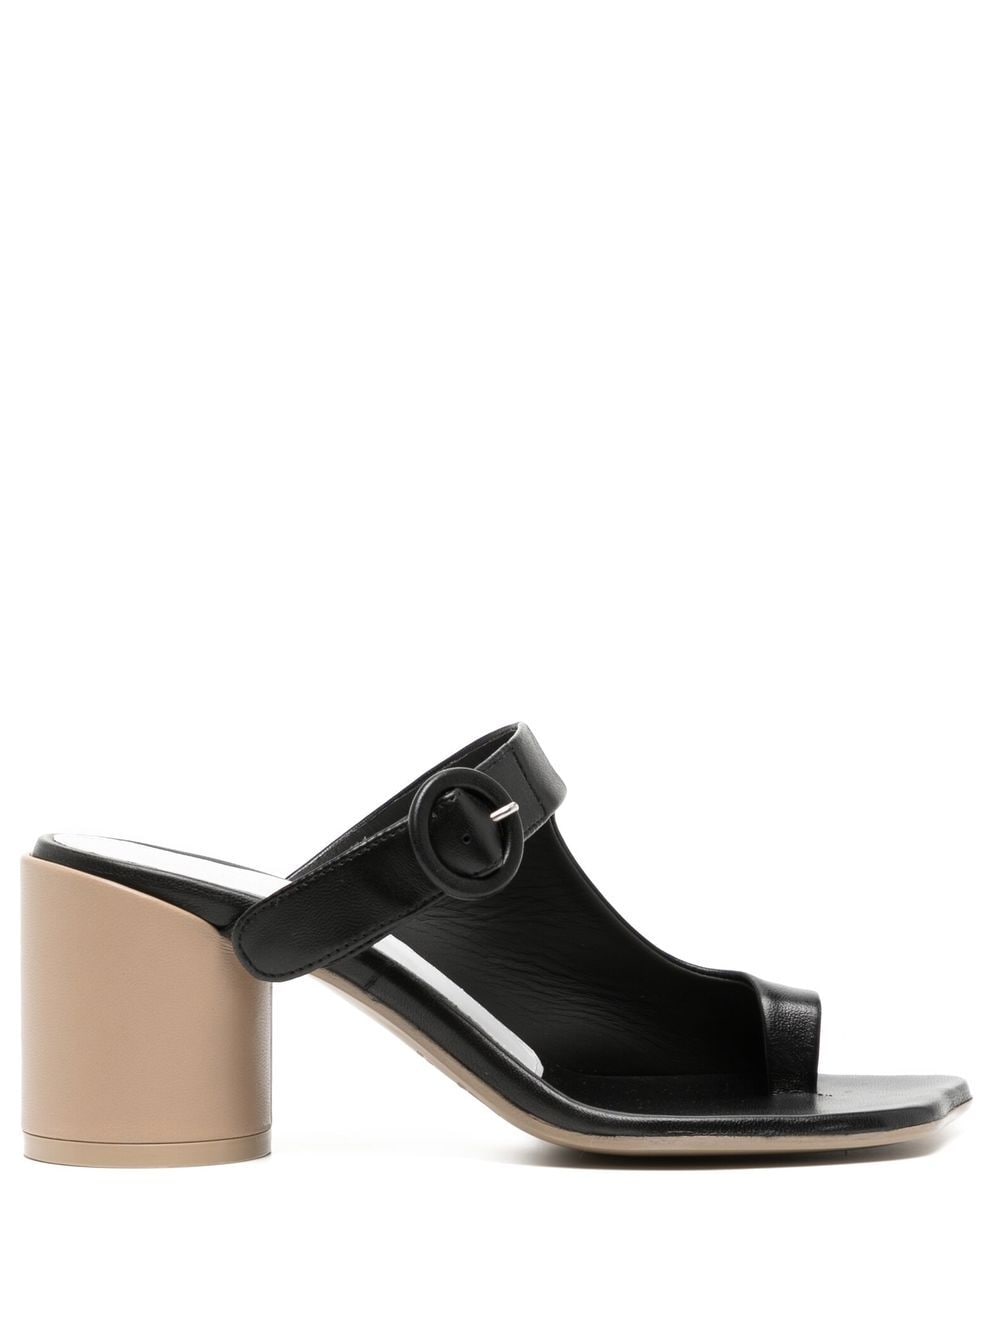 MM6 Maison Margiela 70mm leather mule sandals - Black von MM6 Maison Margiela